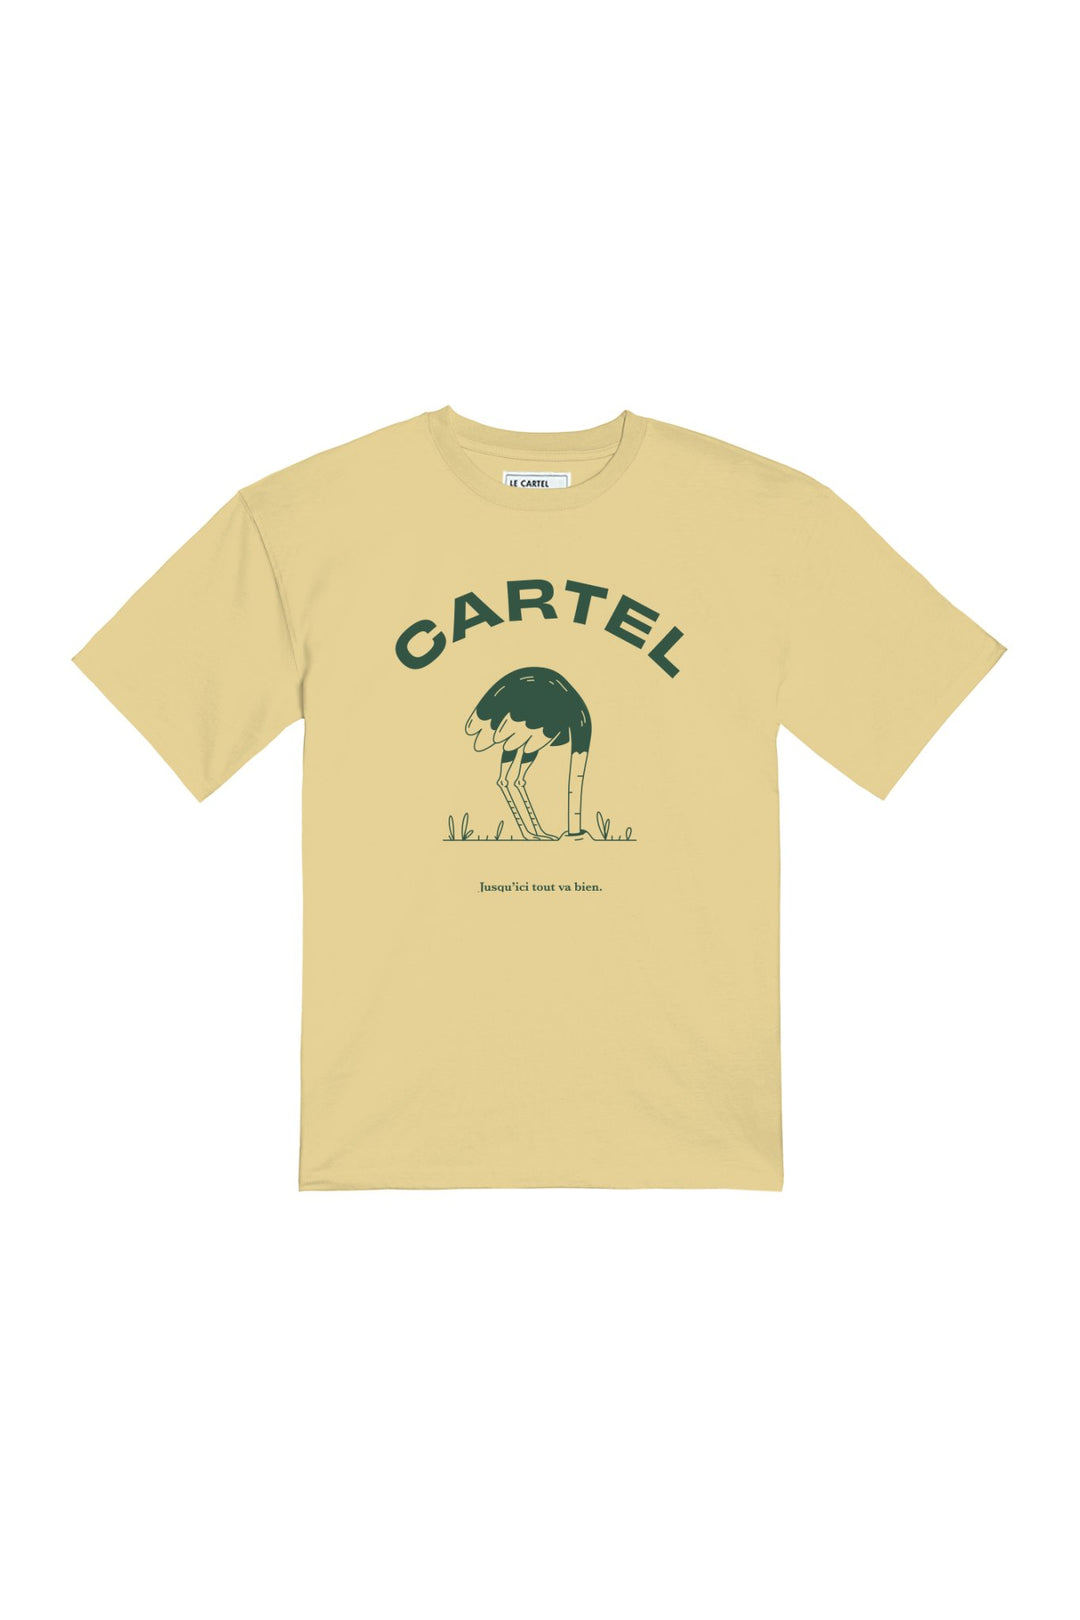 TOUT VA BIEN・T - shirt unisexe・Jaune - Le Cartel